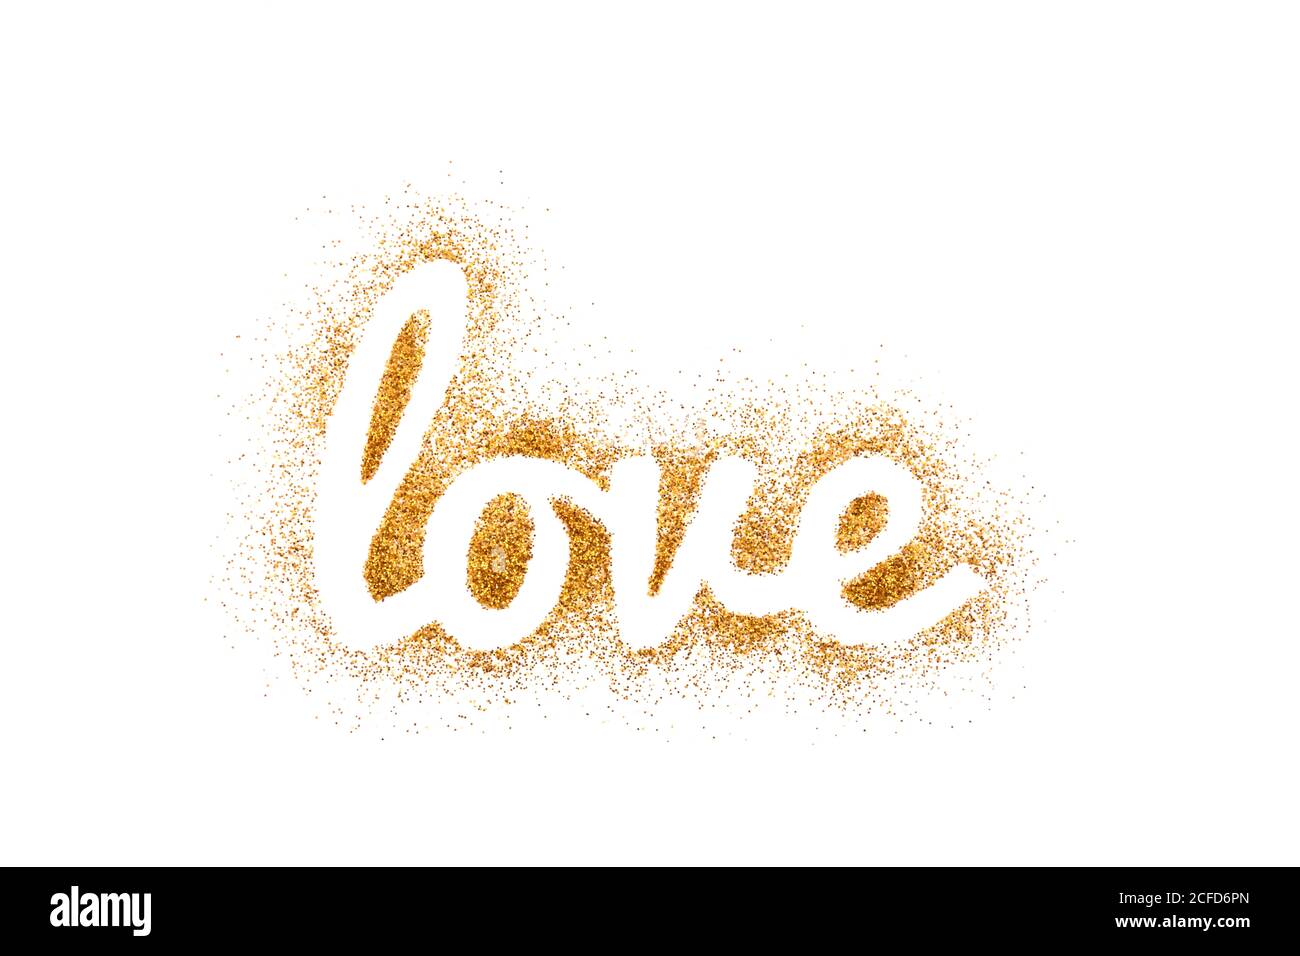 Parola amore su glitter dorato isolato su sfondo bianco Foto Stock